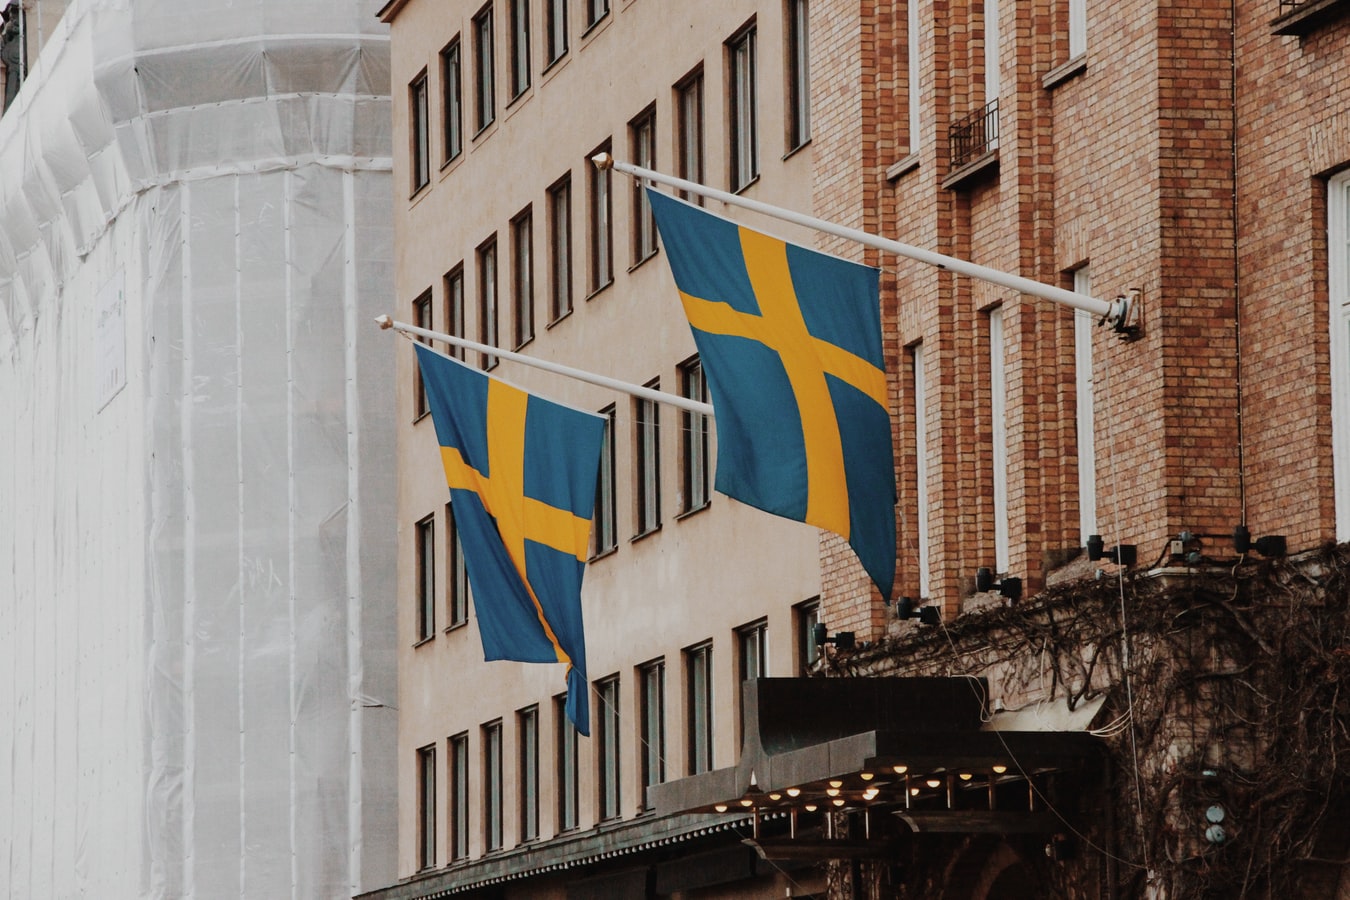 Getting an employment visa – work permit in Sweden